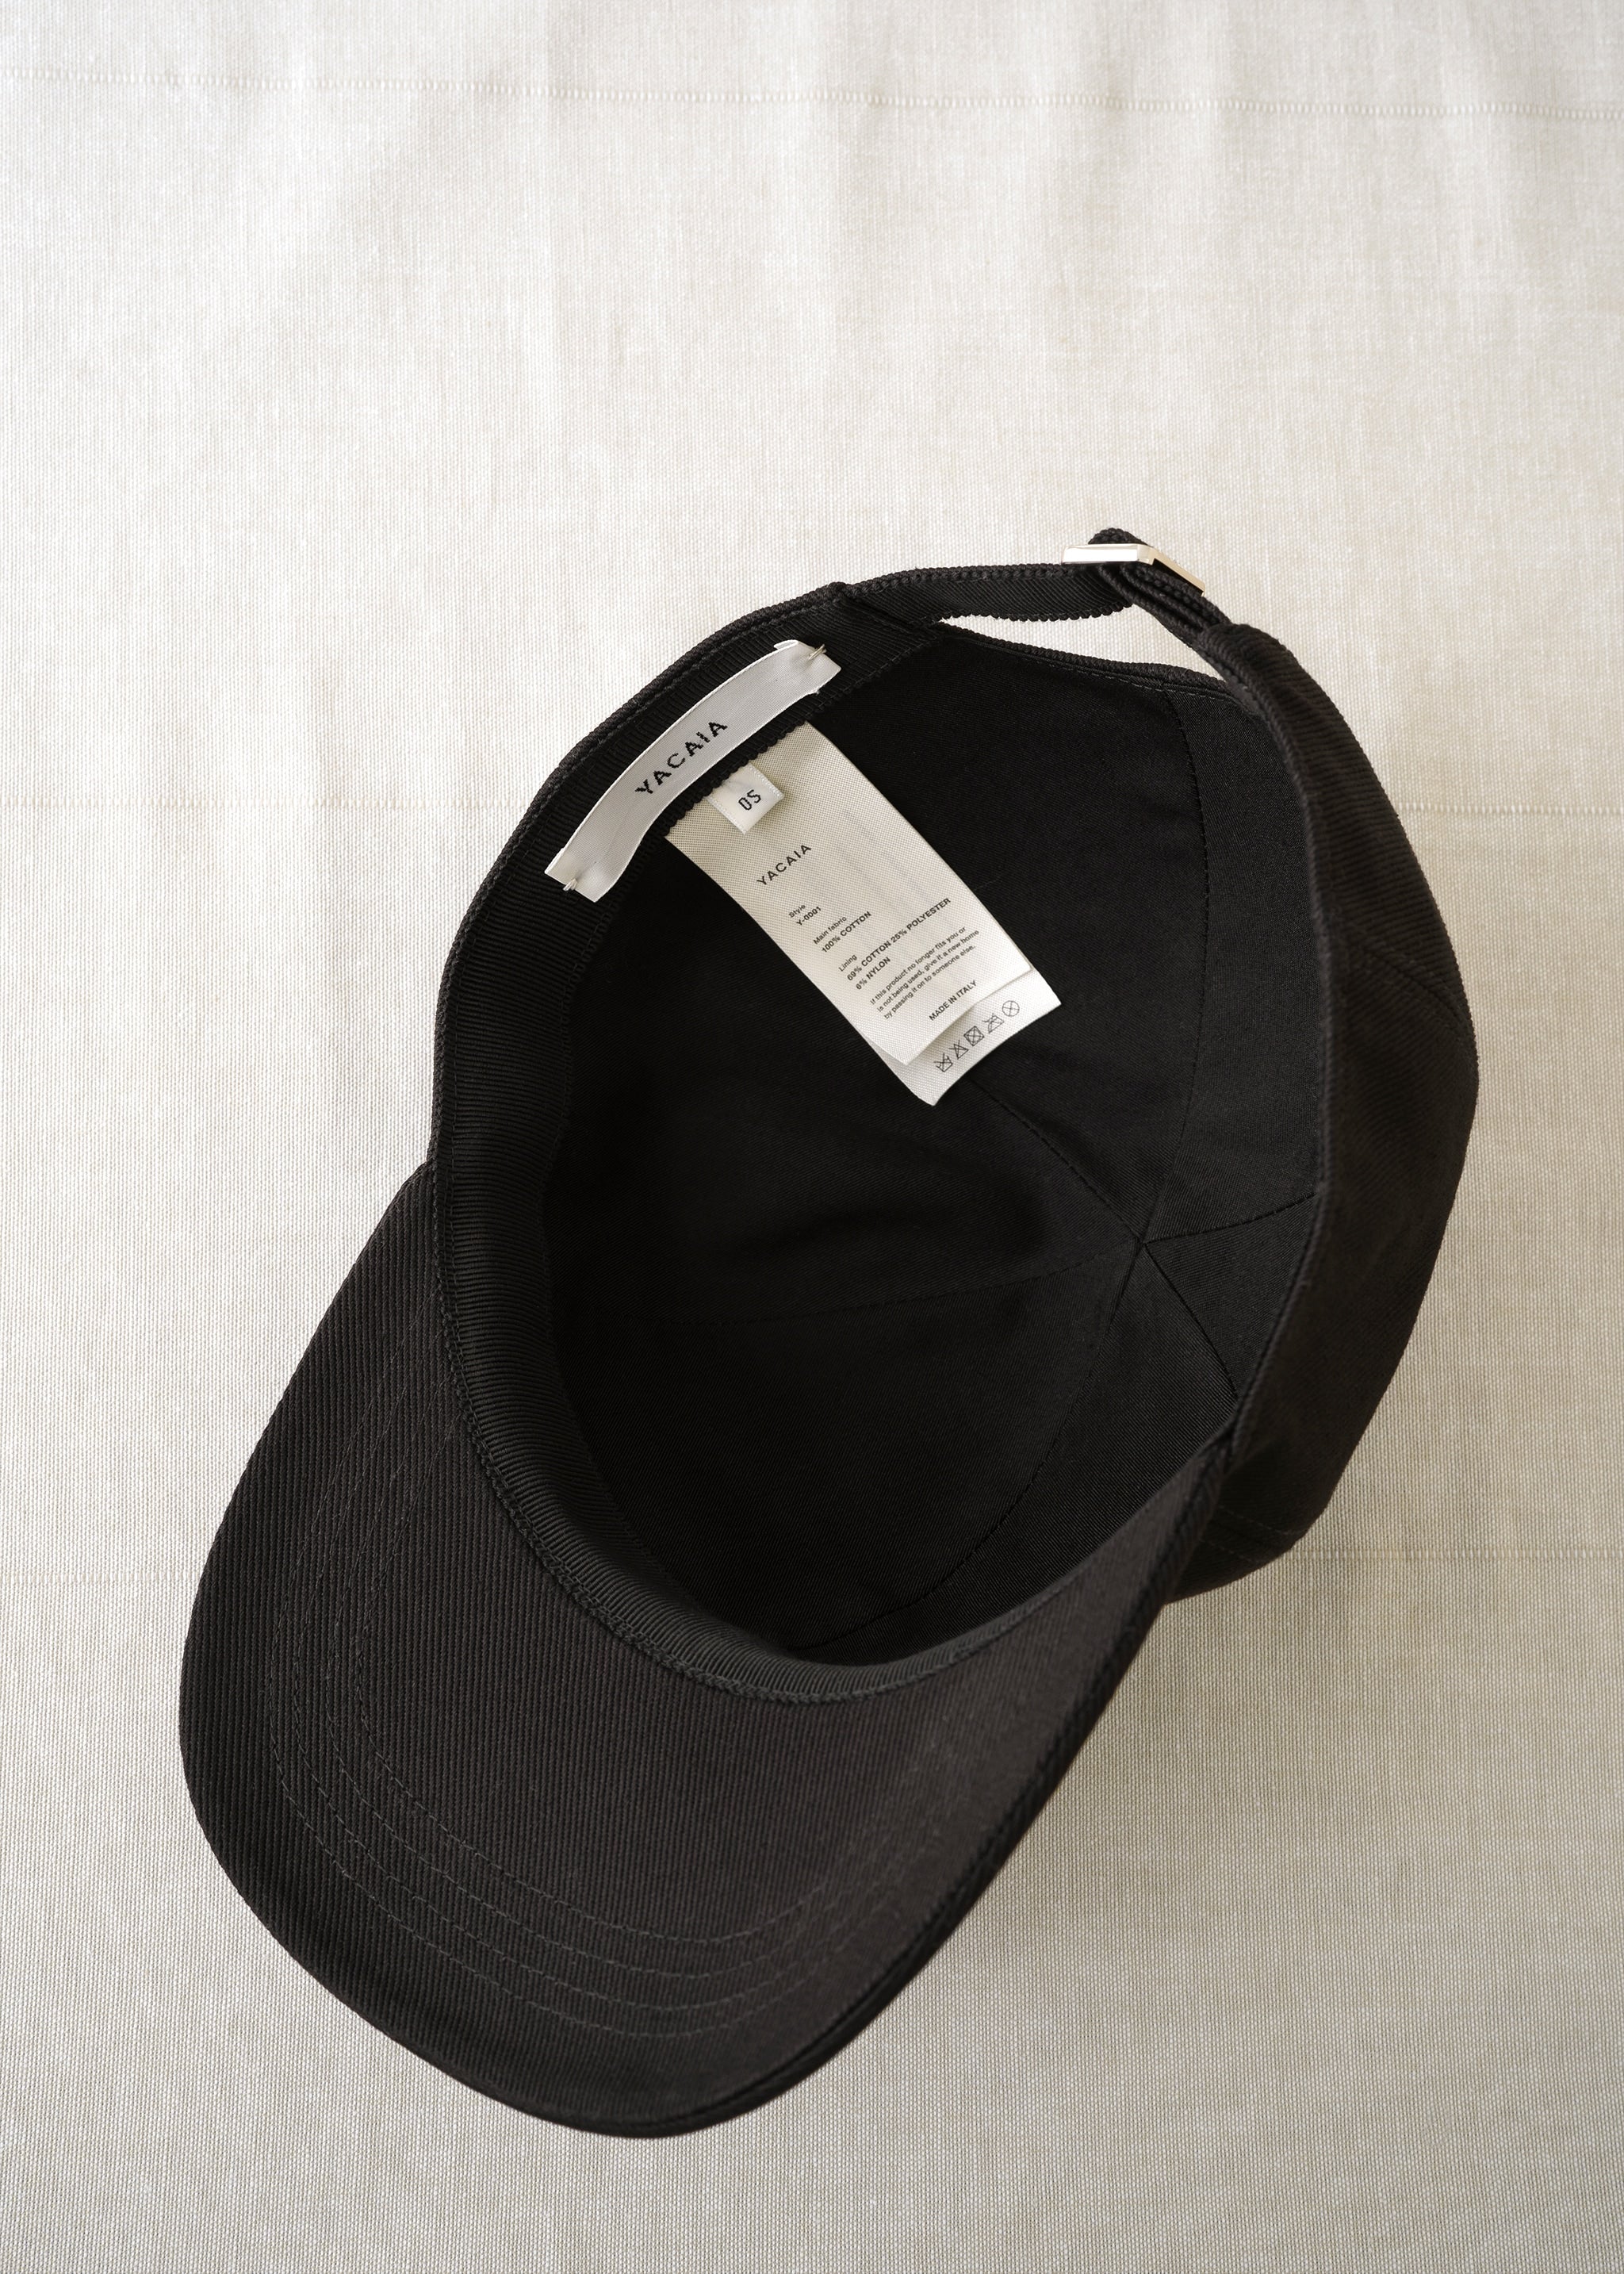 Yacaia Y-0001 Baseball Cap - Black (Cotton twill)